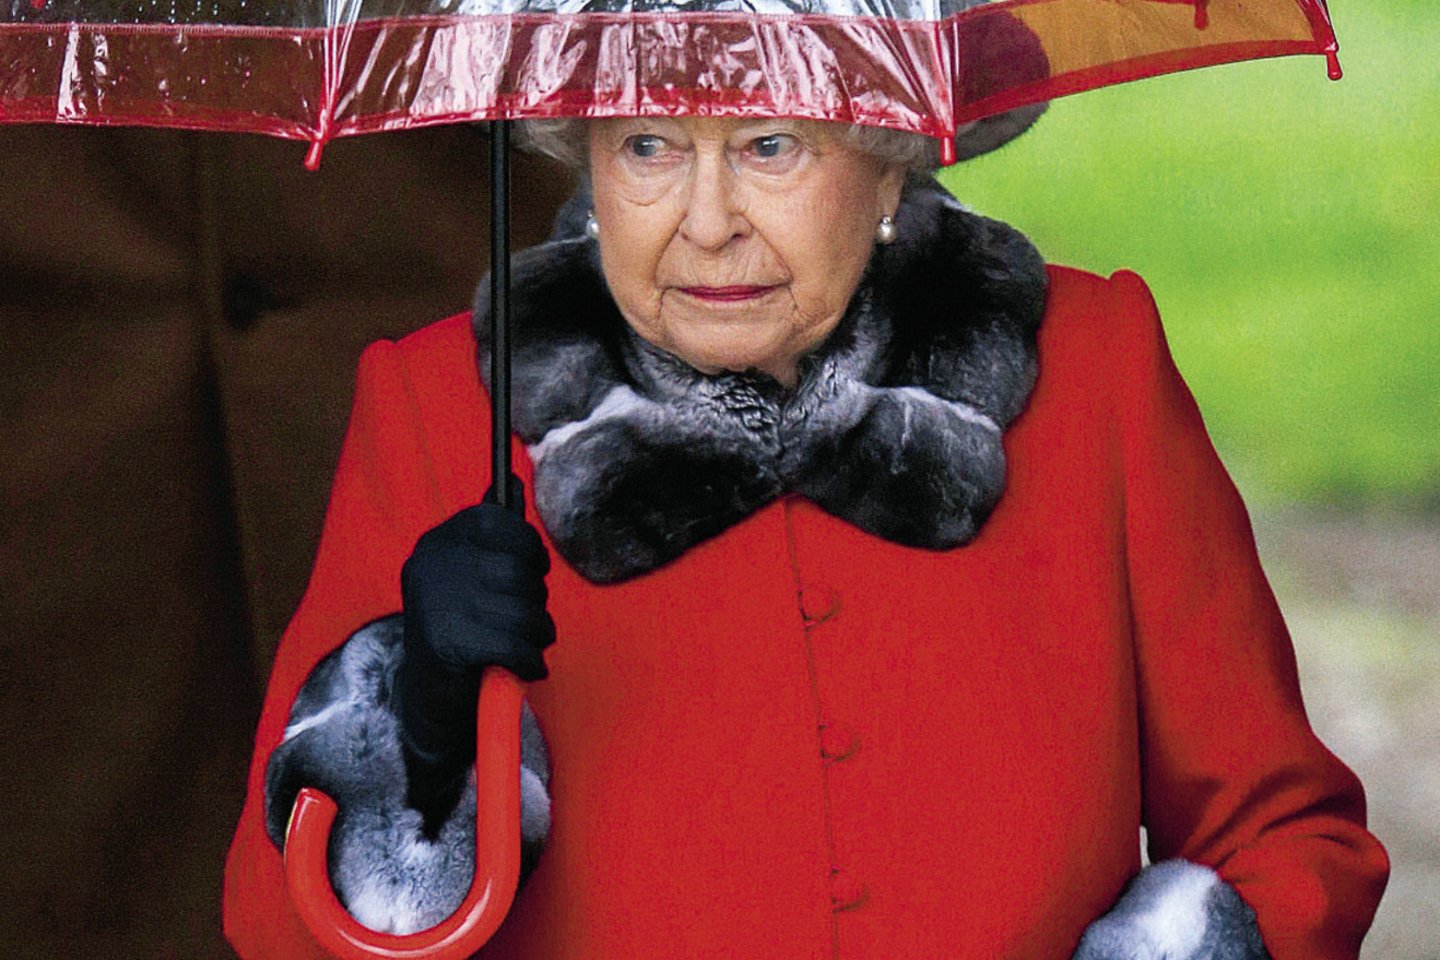 Bakingamo rūmai pranešė, kad naujuose specialiai karalienei Elizabeth II (93 m.) sukurtuose apdaruose nebebus tikro kailio.<br>„Scanpix“ nuotr.